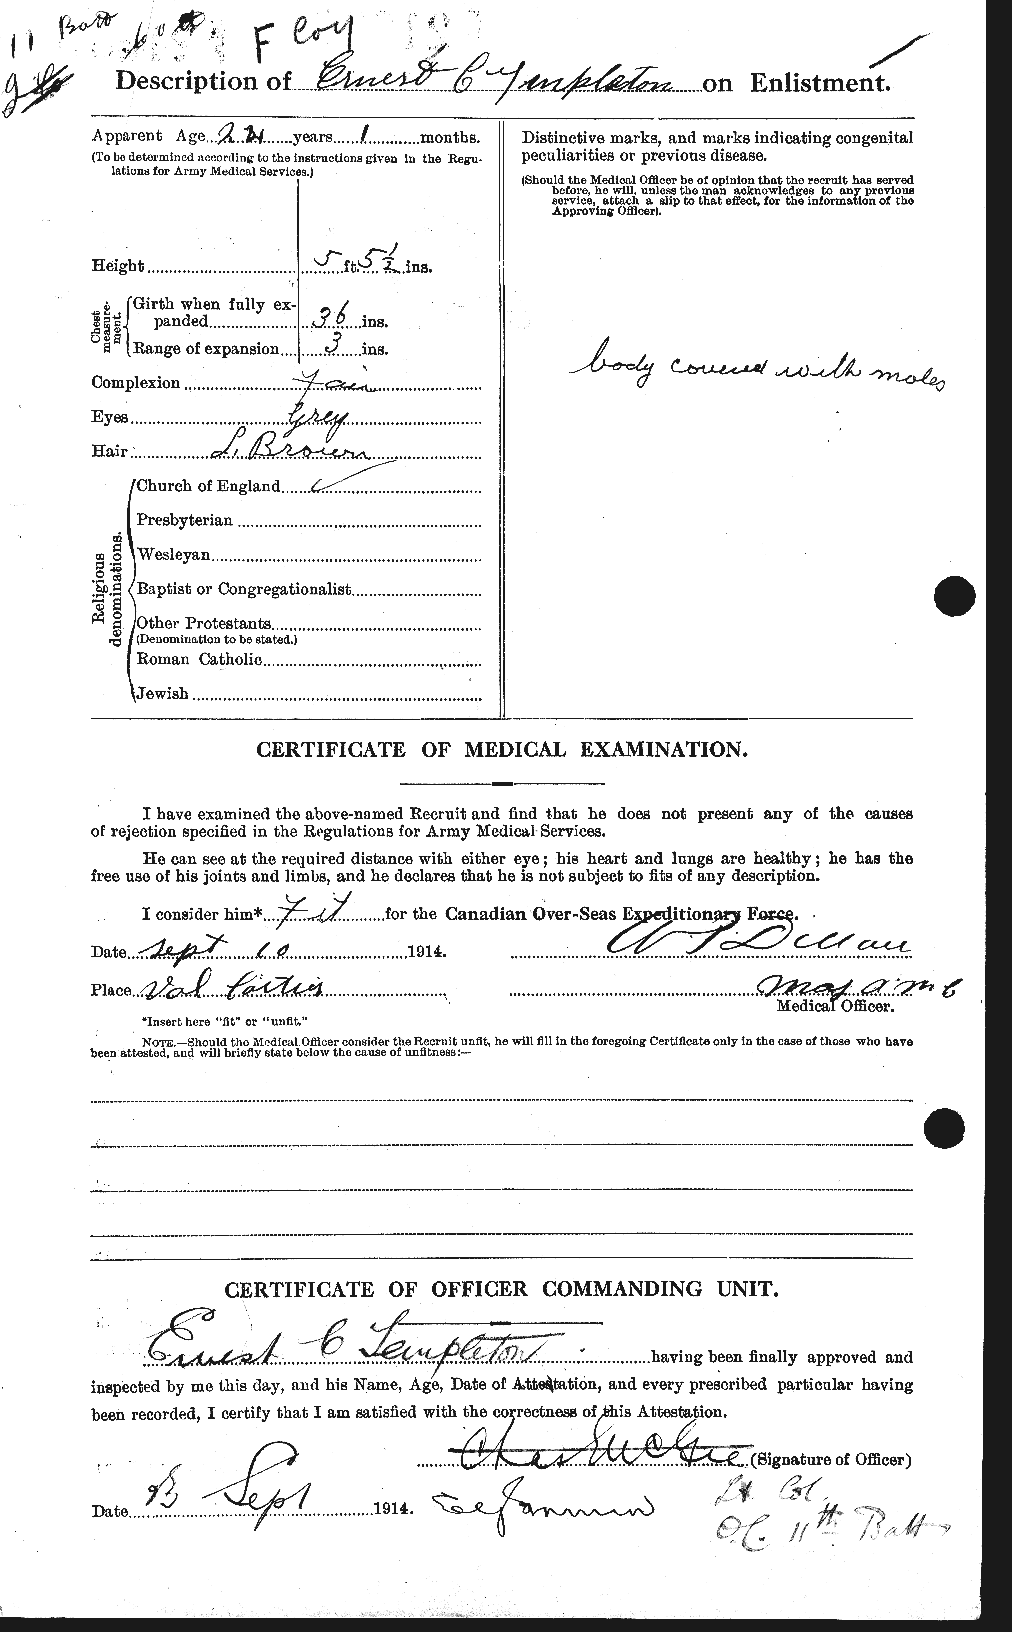 Dossiers du Personnel de la Première Guerre mondiale - CEC 629149b